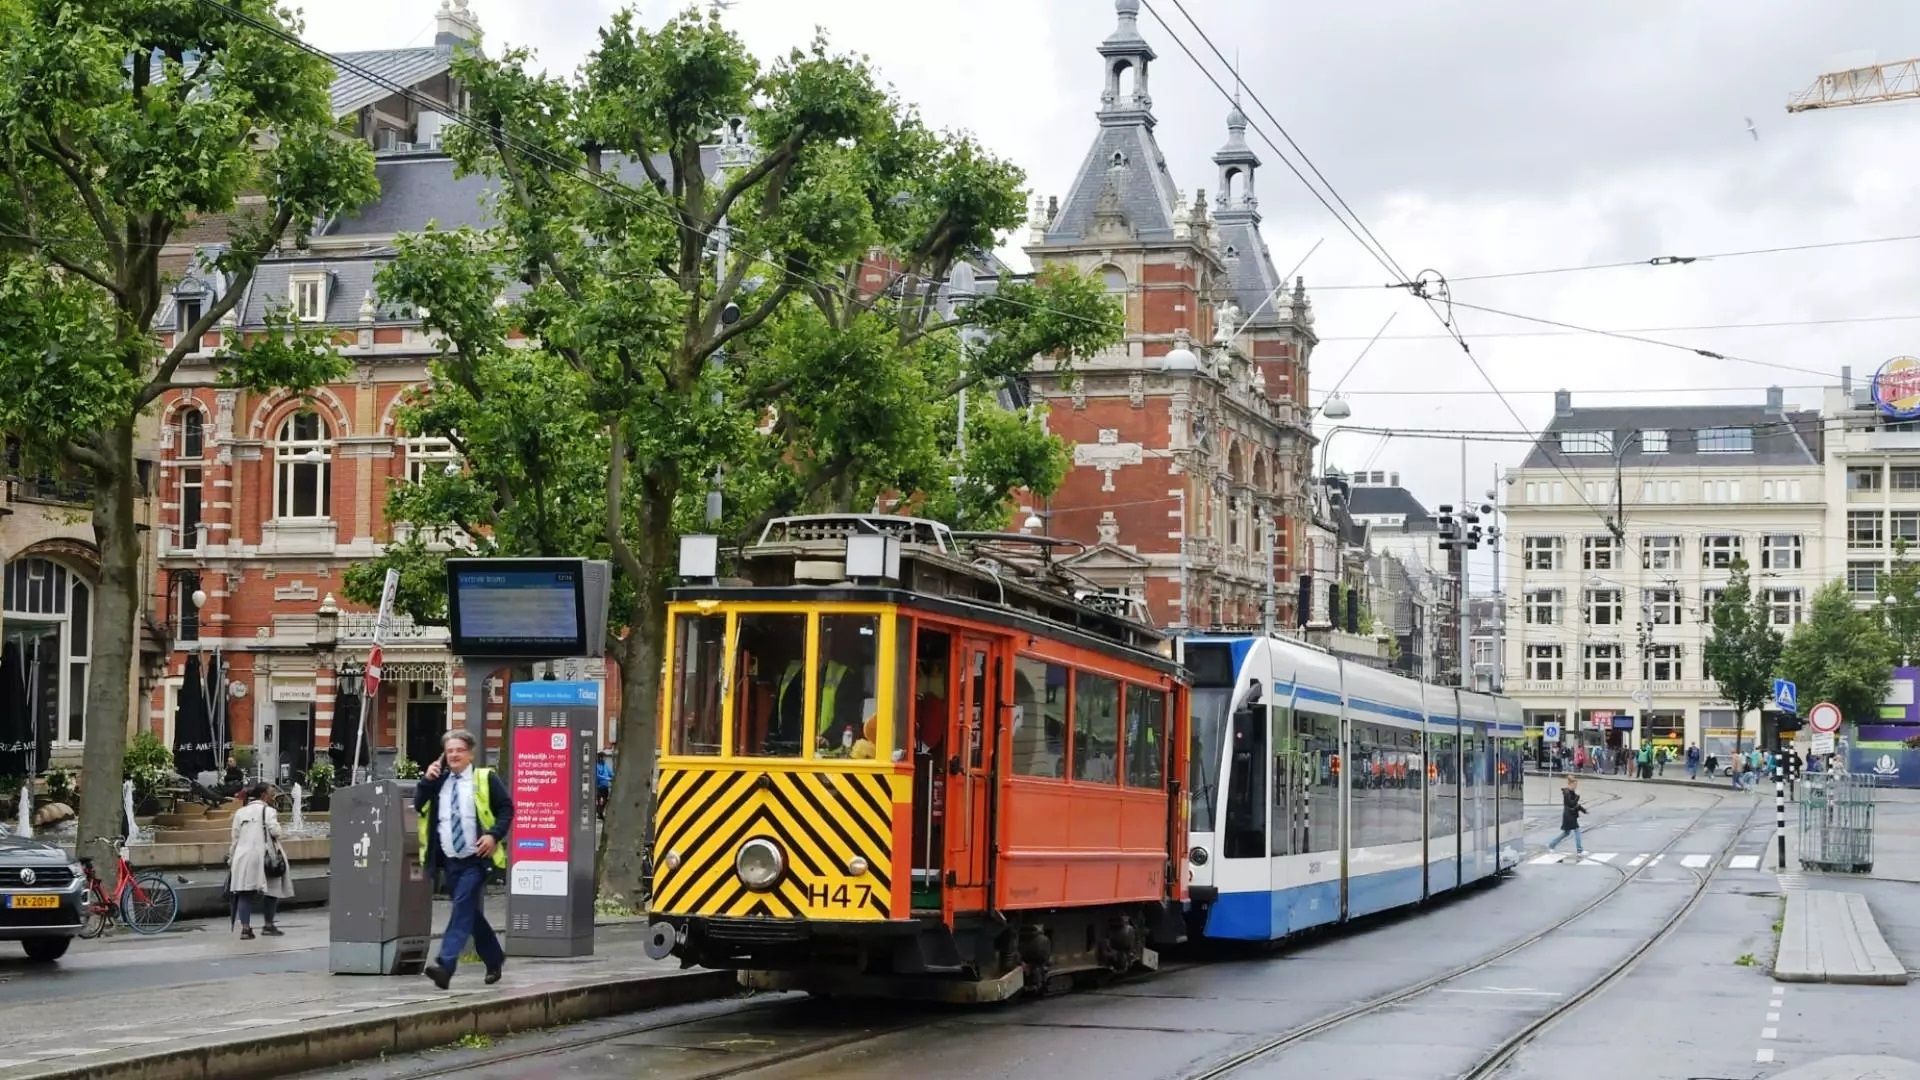 Museumtramlijn sleept gestrande trams weg